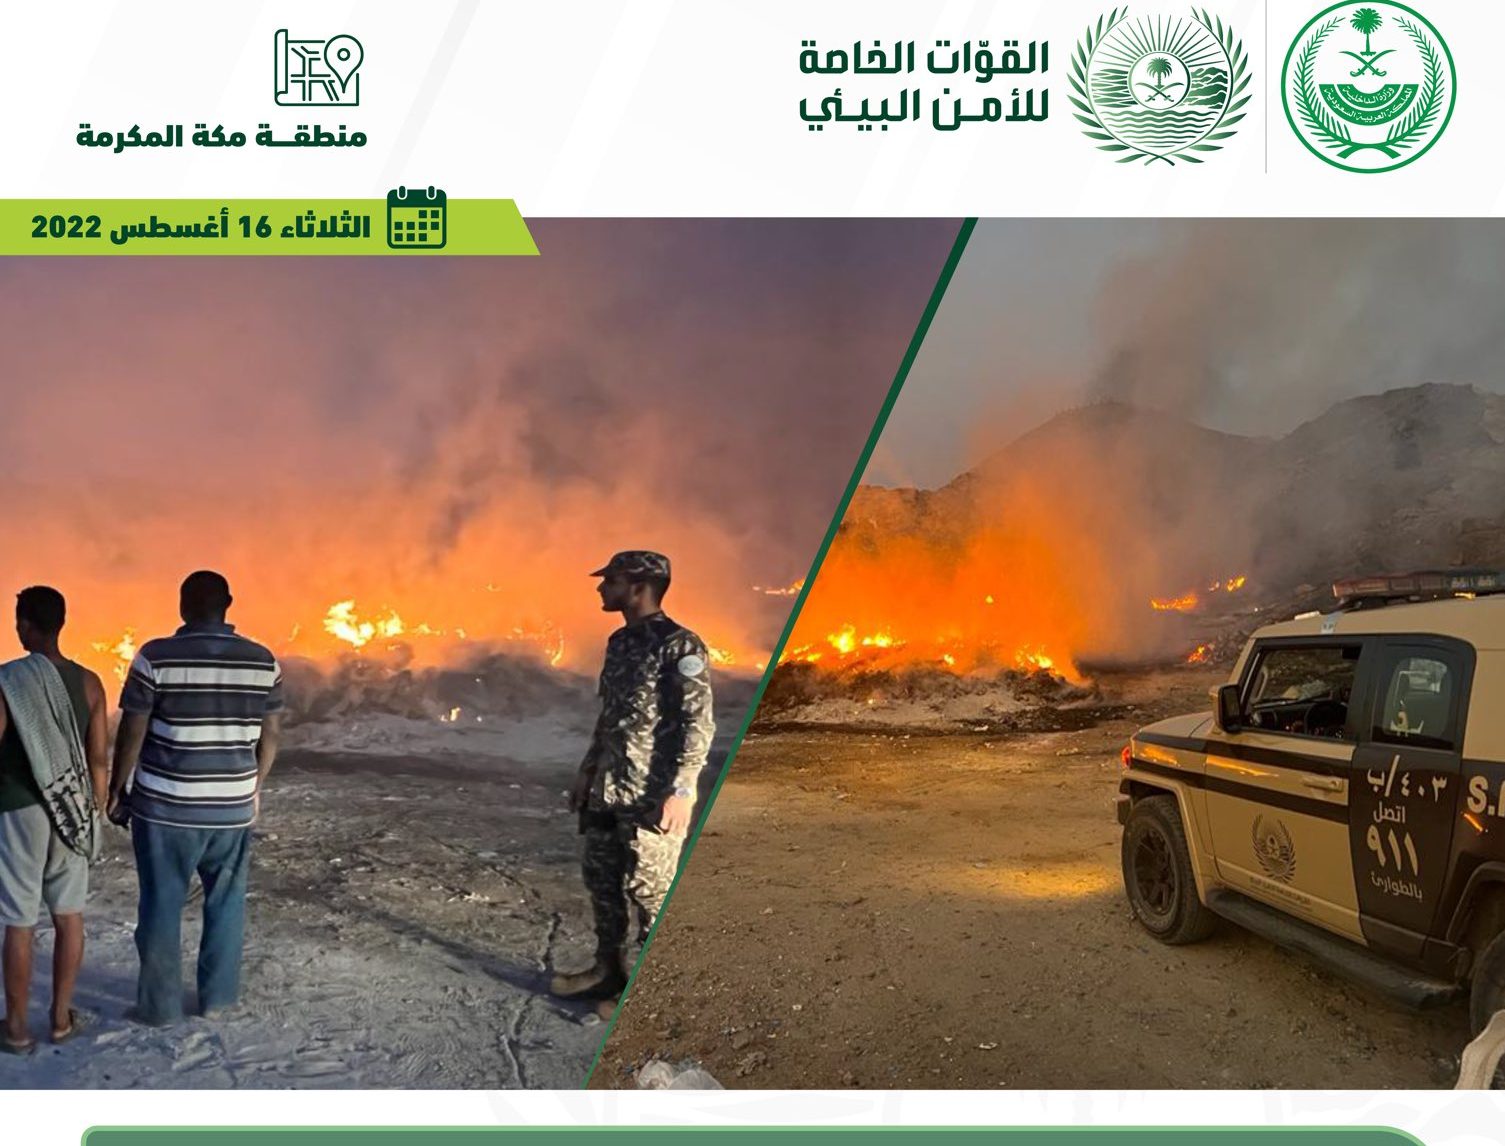 ضبط مخالفين لتلويثهما البيئة بحرق مخلفات صناعية في جدة